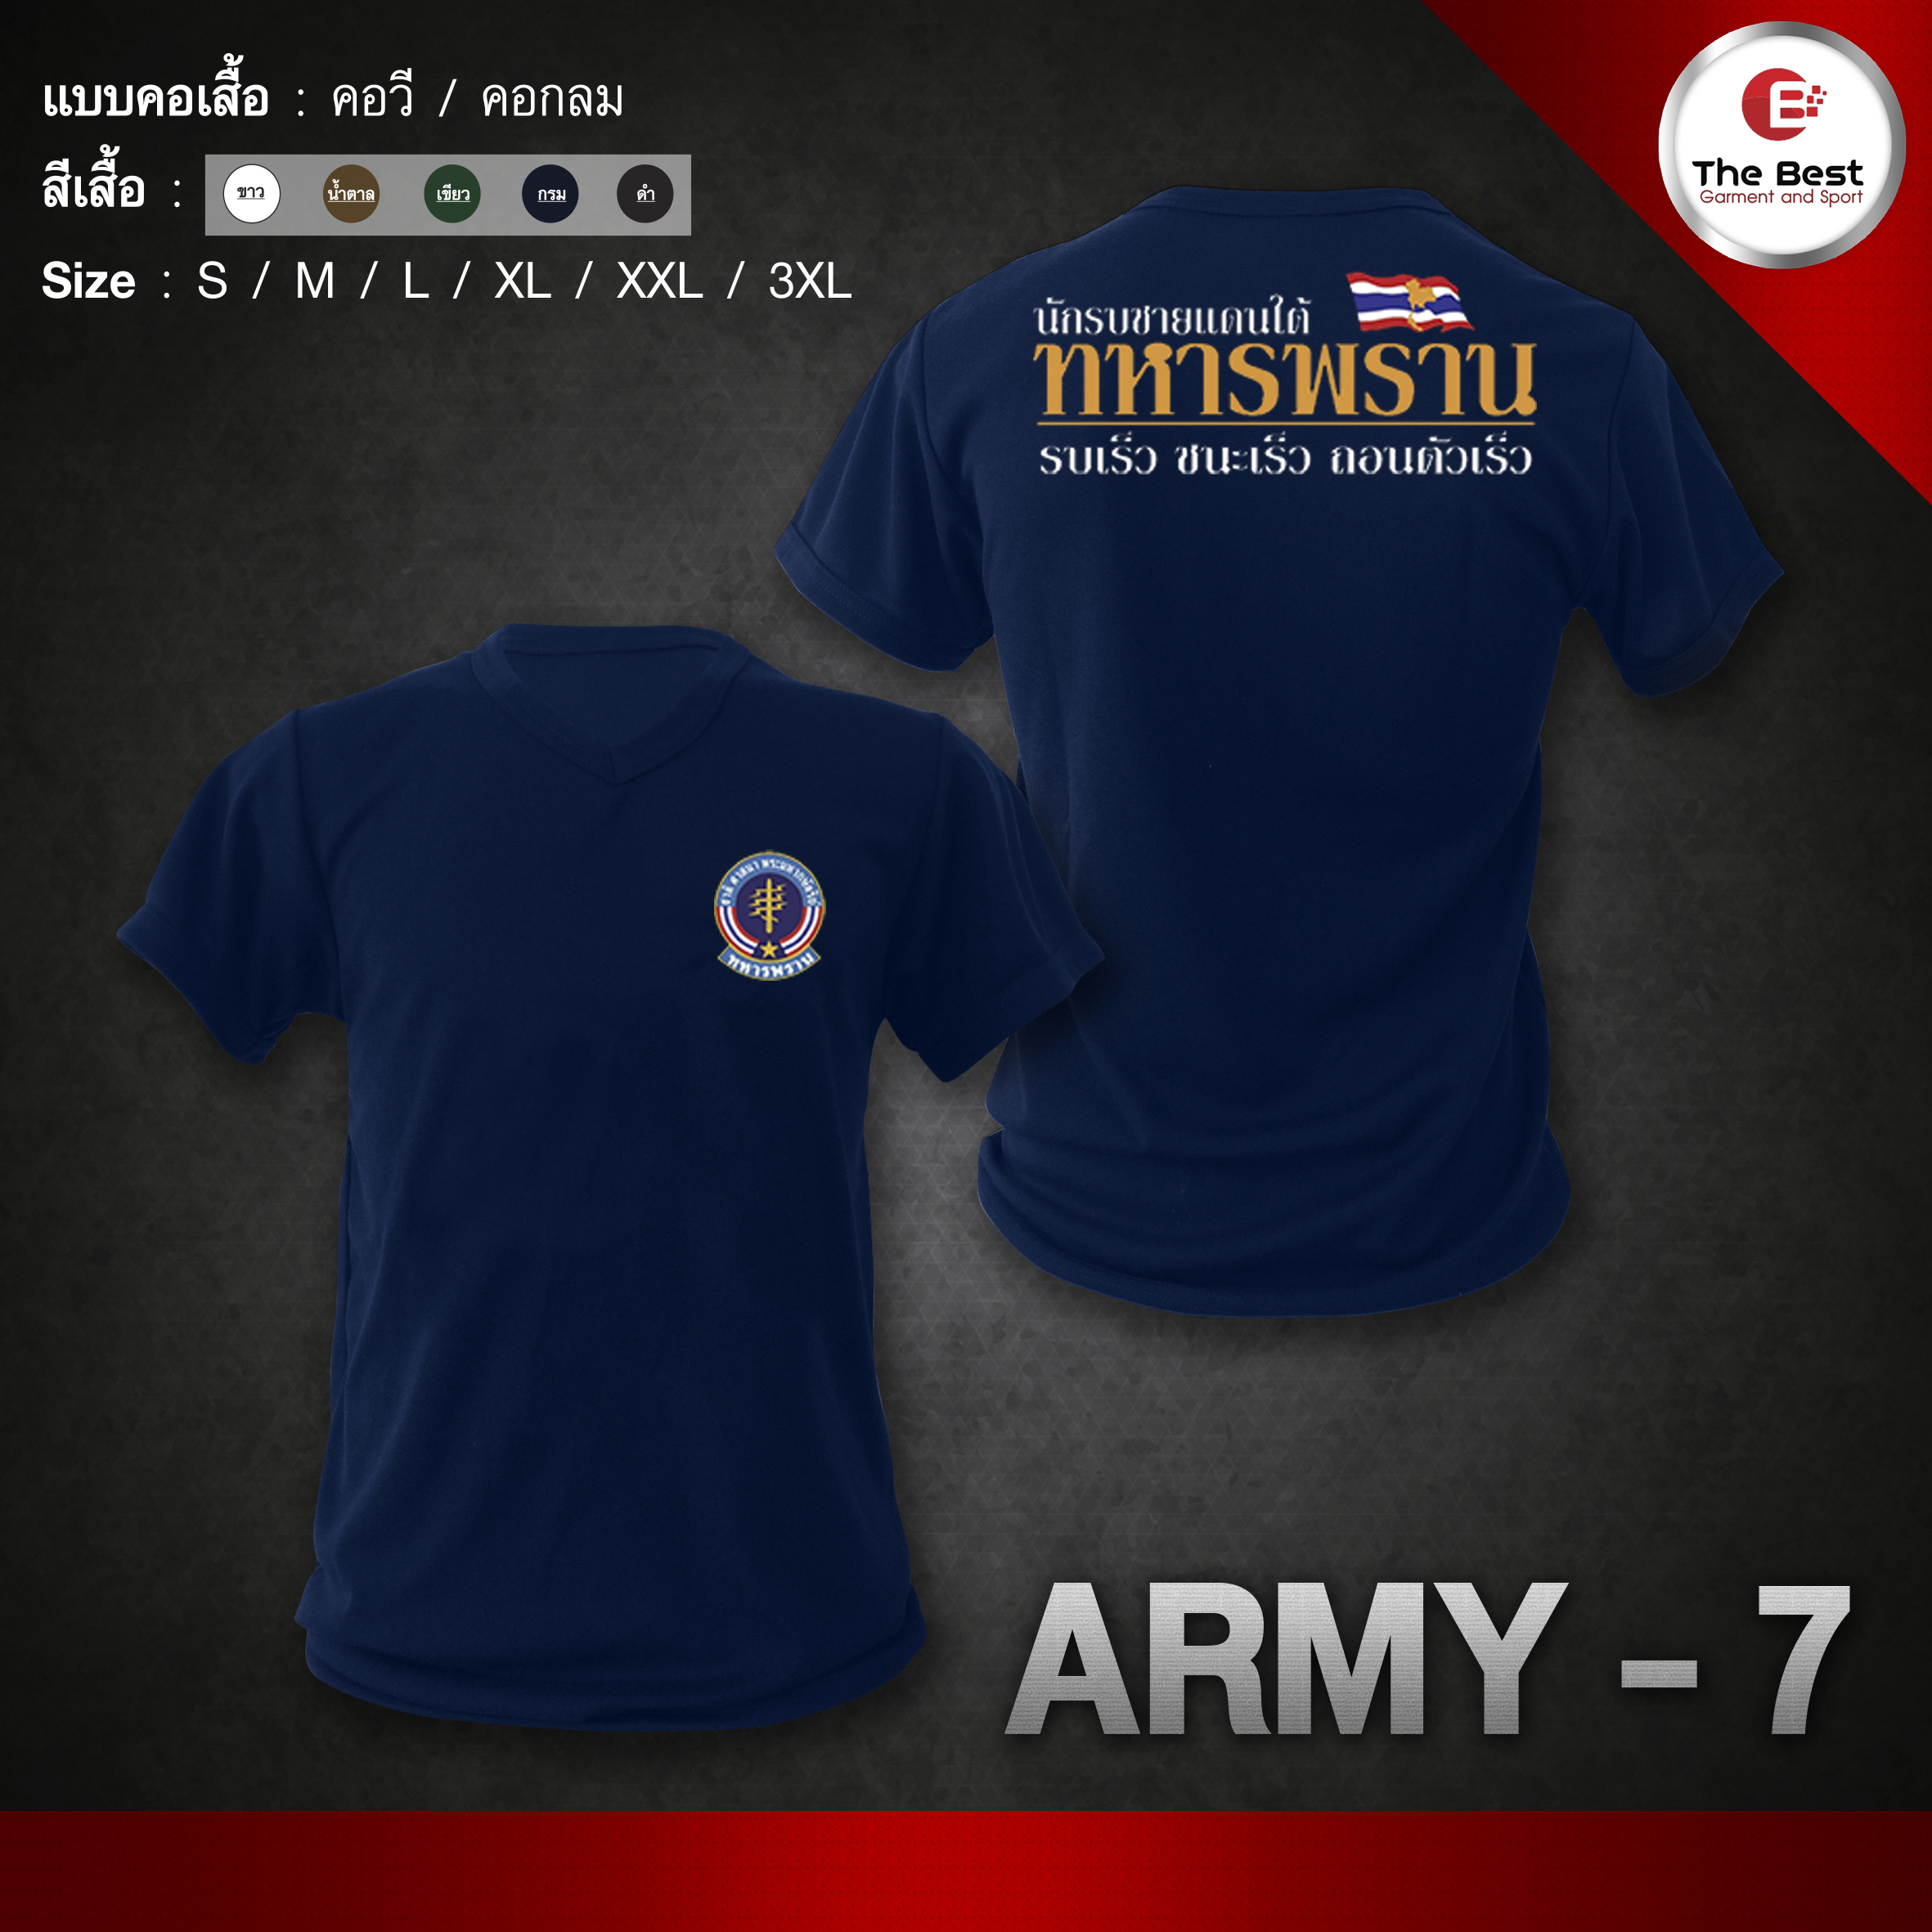 ARMY- 7 เสื้อยืด เสื้อซับในทหารพราน เสื้อทหารพราน กองทัพบก ทหารพราน